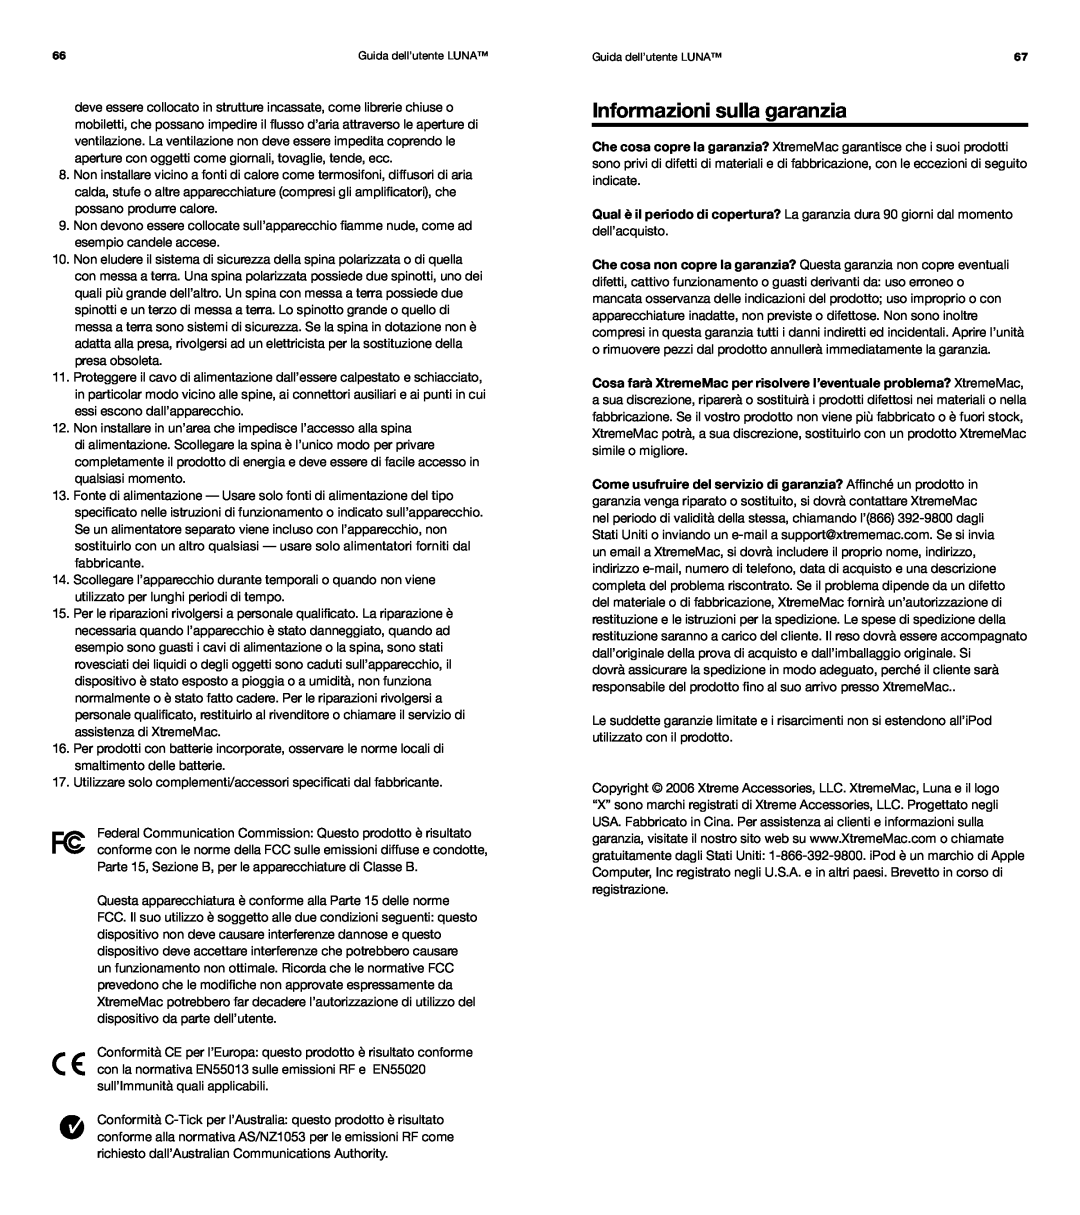 XtremeMac Room Audio System user manual Informazioni sulla garanzia, Guida dell’utente LUNA 